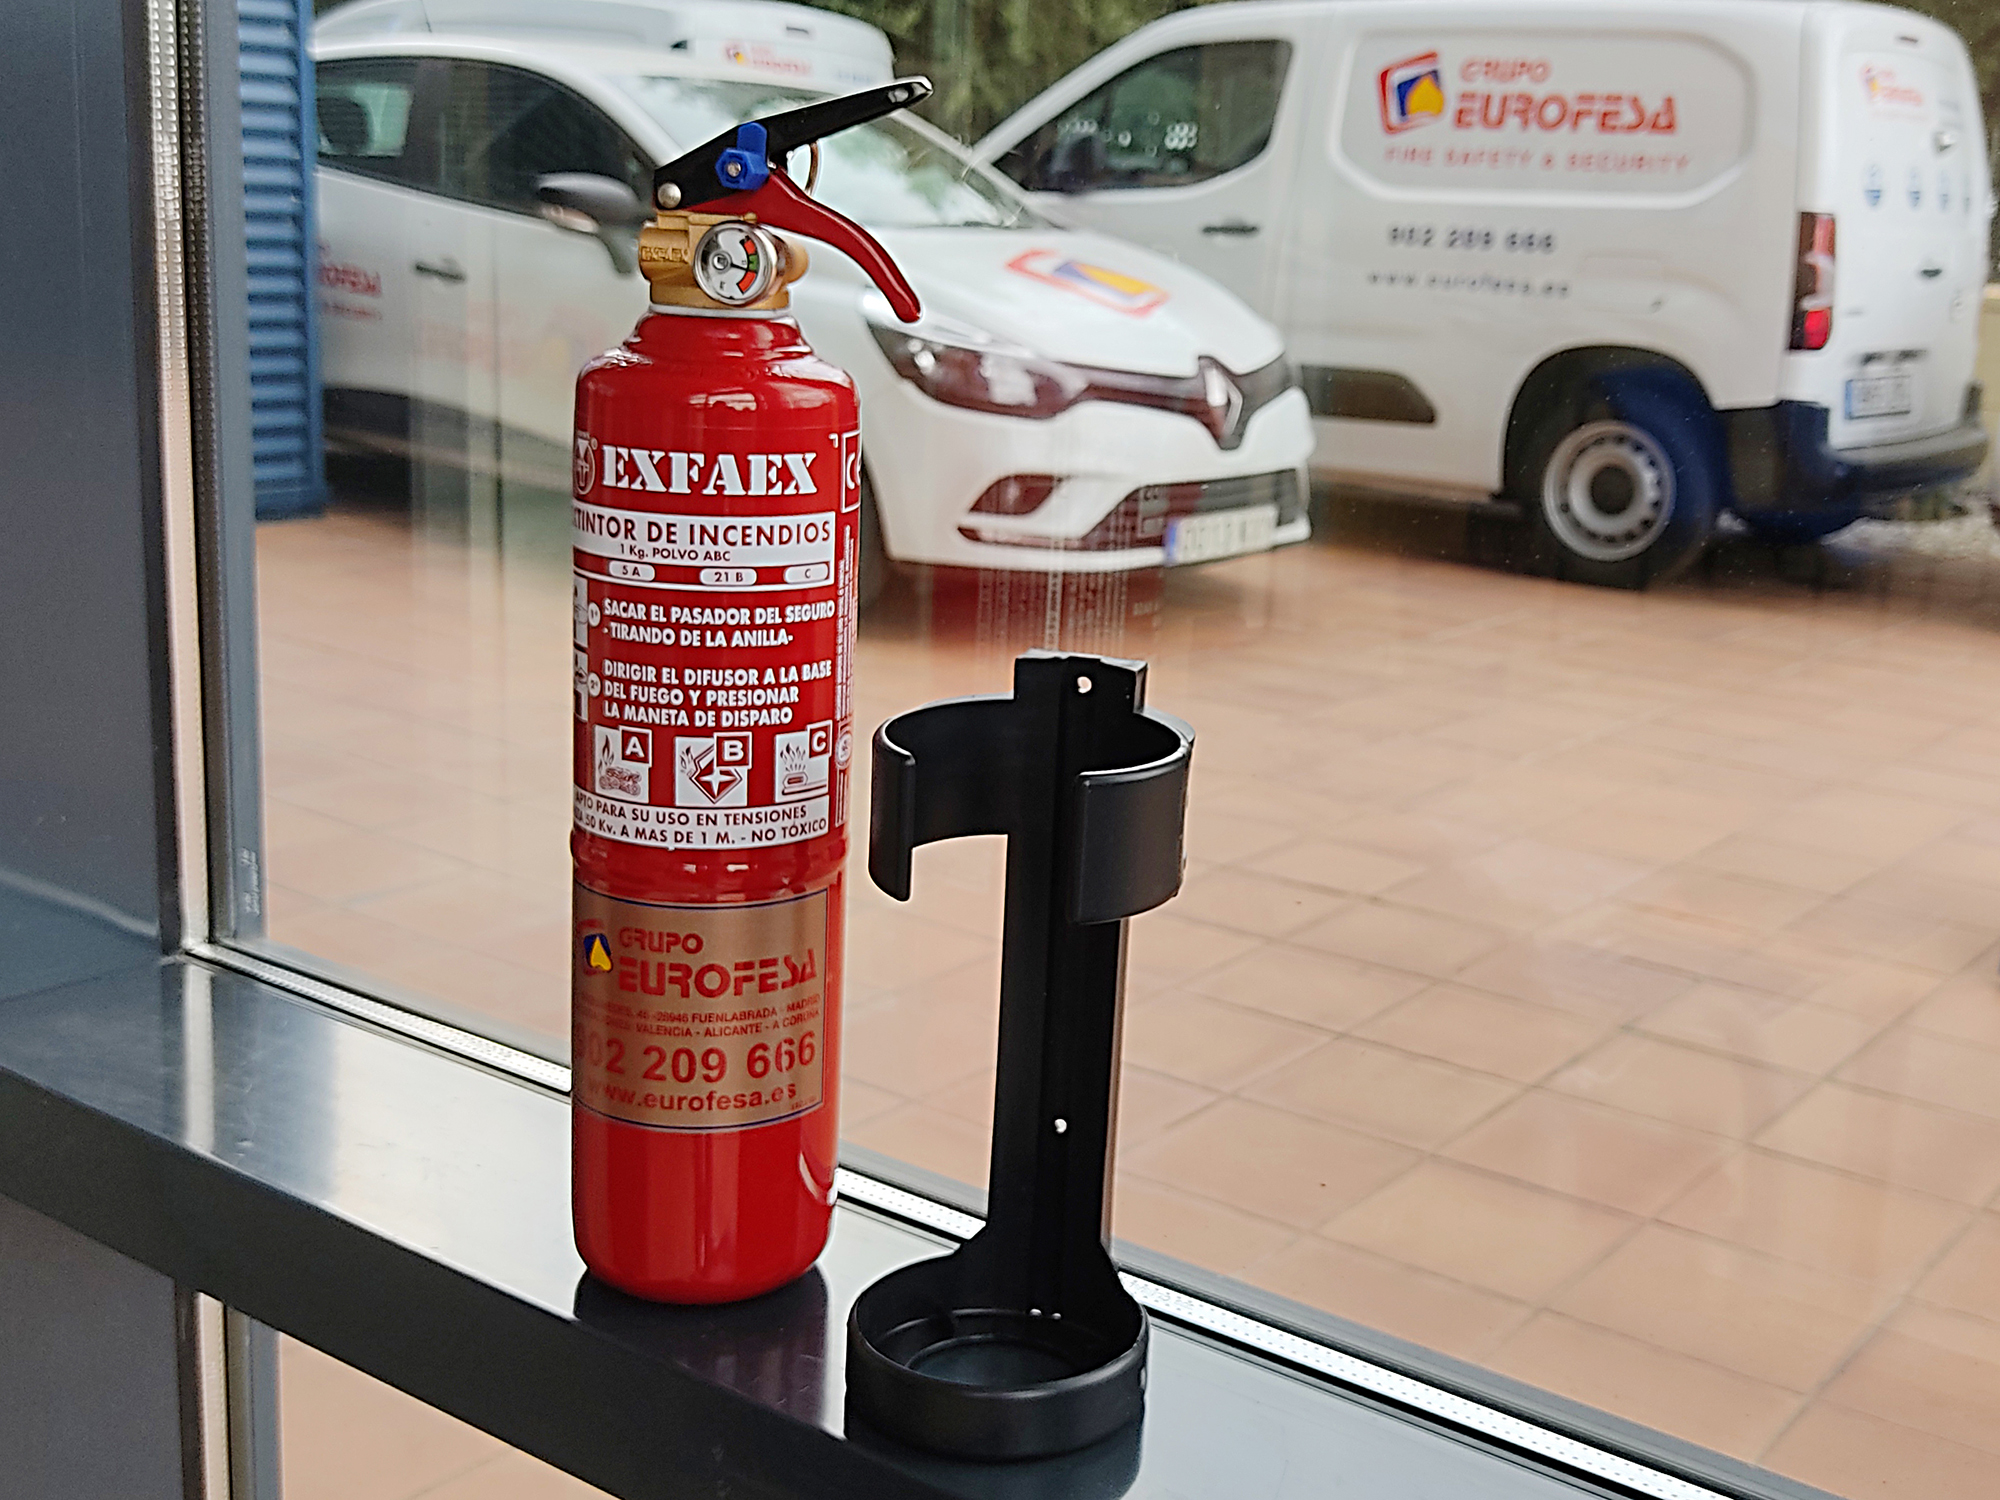 Extintores en vehículos, ¿son obligatorios? - Boletín Eurofesa